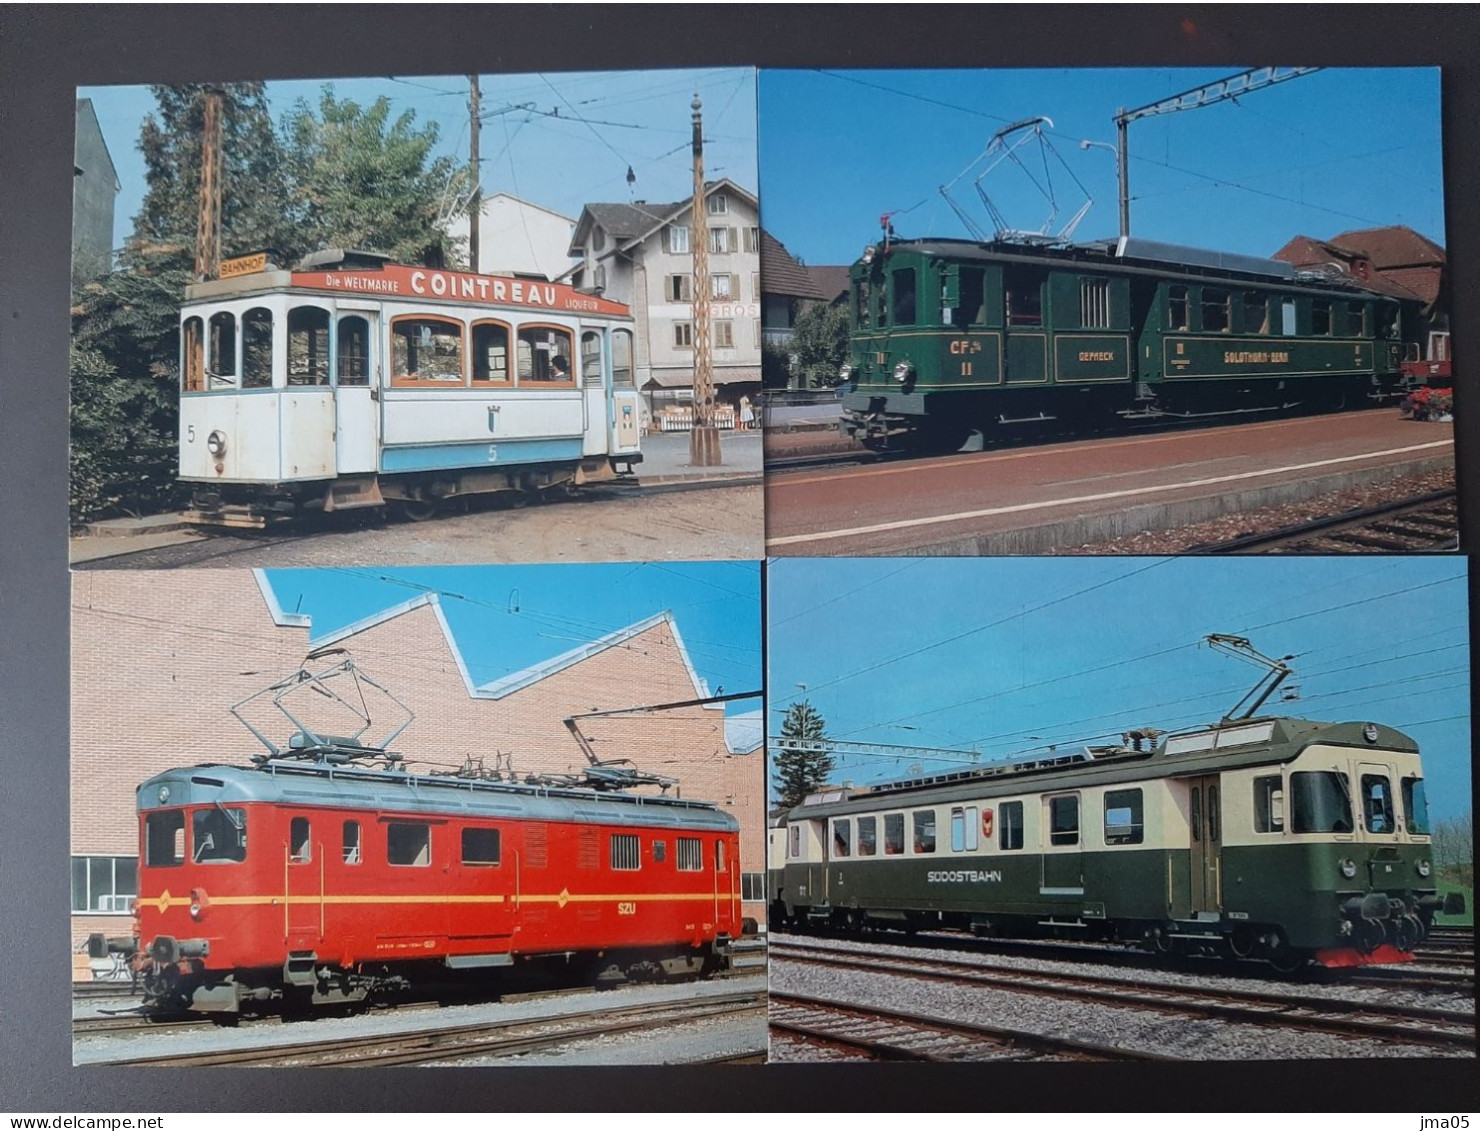 Beau lot de 130 cartes de Train - Locomotive - Train électrique - Motrice - Chemin de fer fédéraux de Suisse SBB CFF